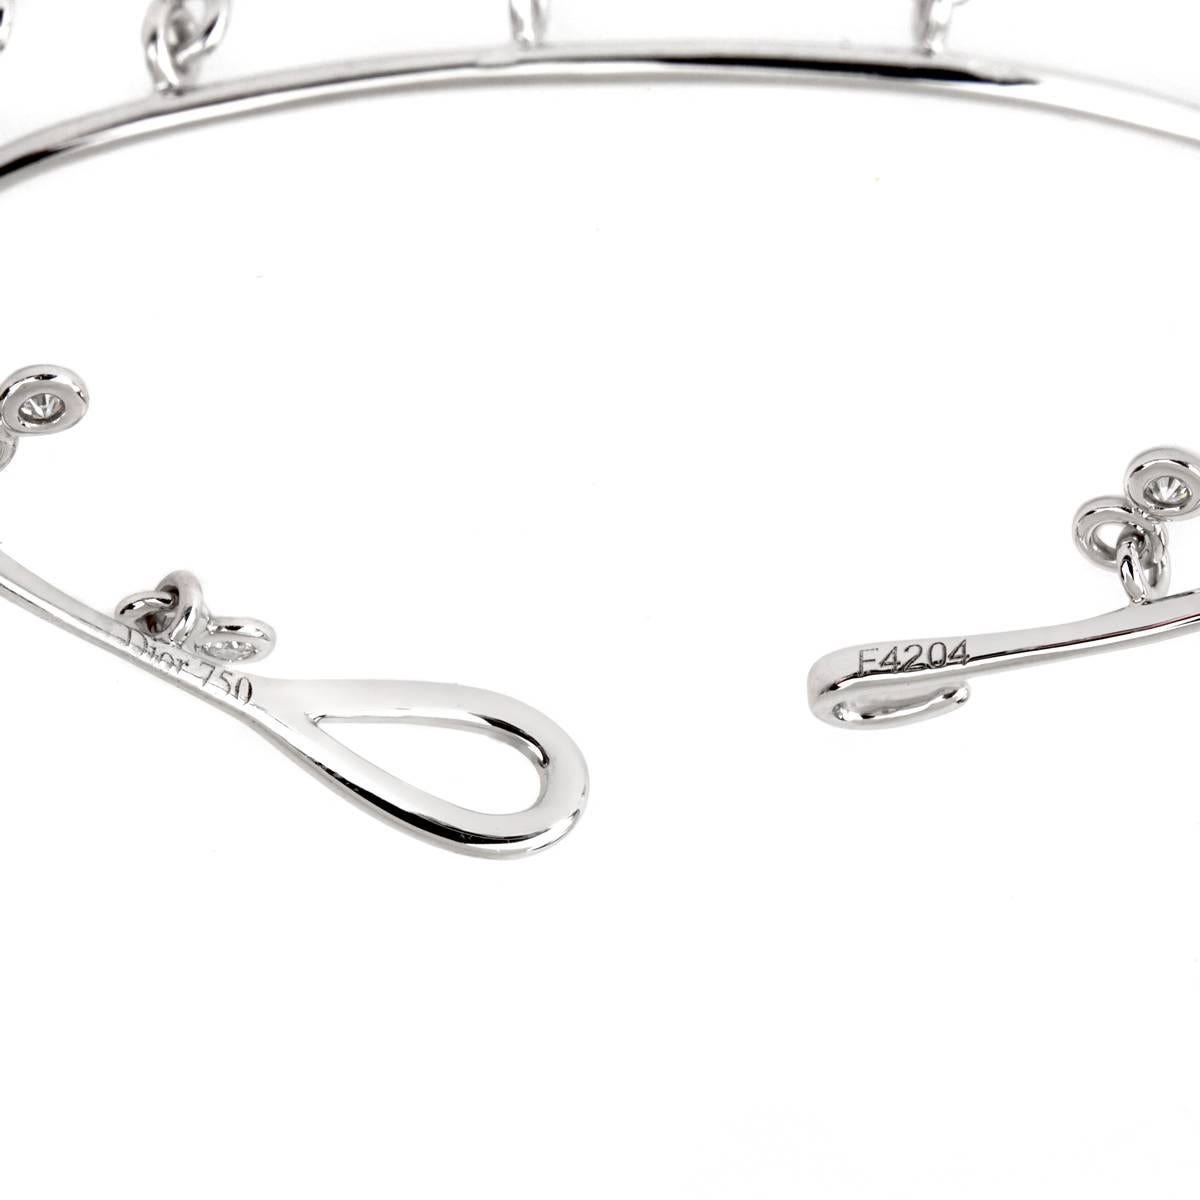 Ein schickes Dior-Armband mit 12 der feinsten Dior-Diamanten im runden Brillantschliff, die in einer Fassung aus 18 Karat Weißgold frei schweben.

Größe: Mittel 

Sku:858